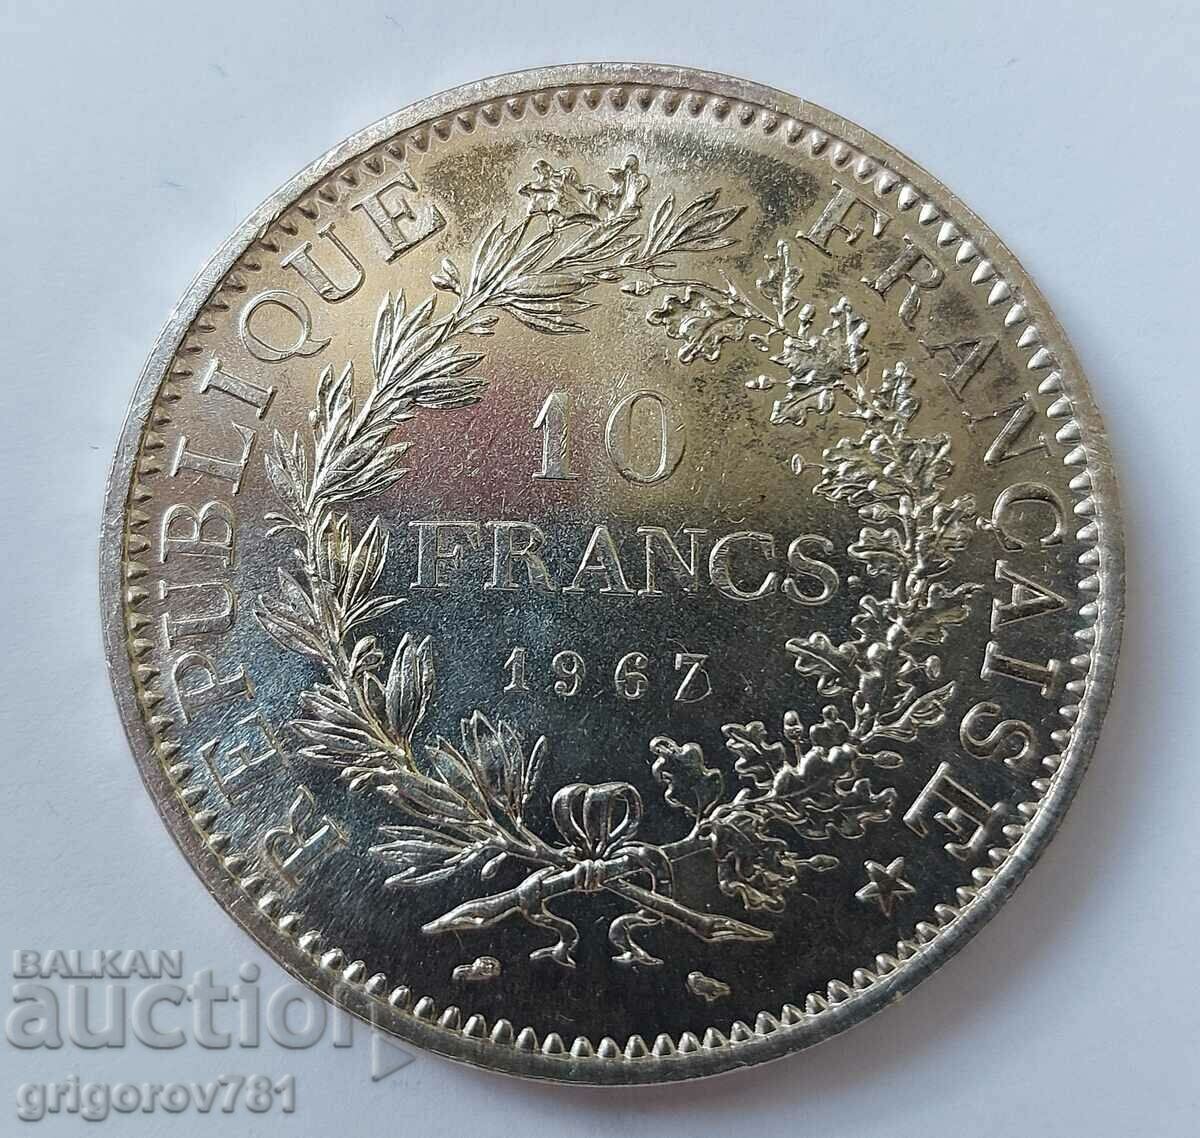 10 Franci Argint Franta 1967 - Moneda de argint #52